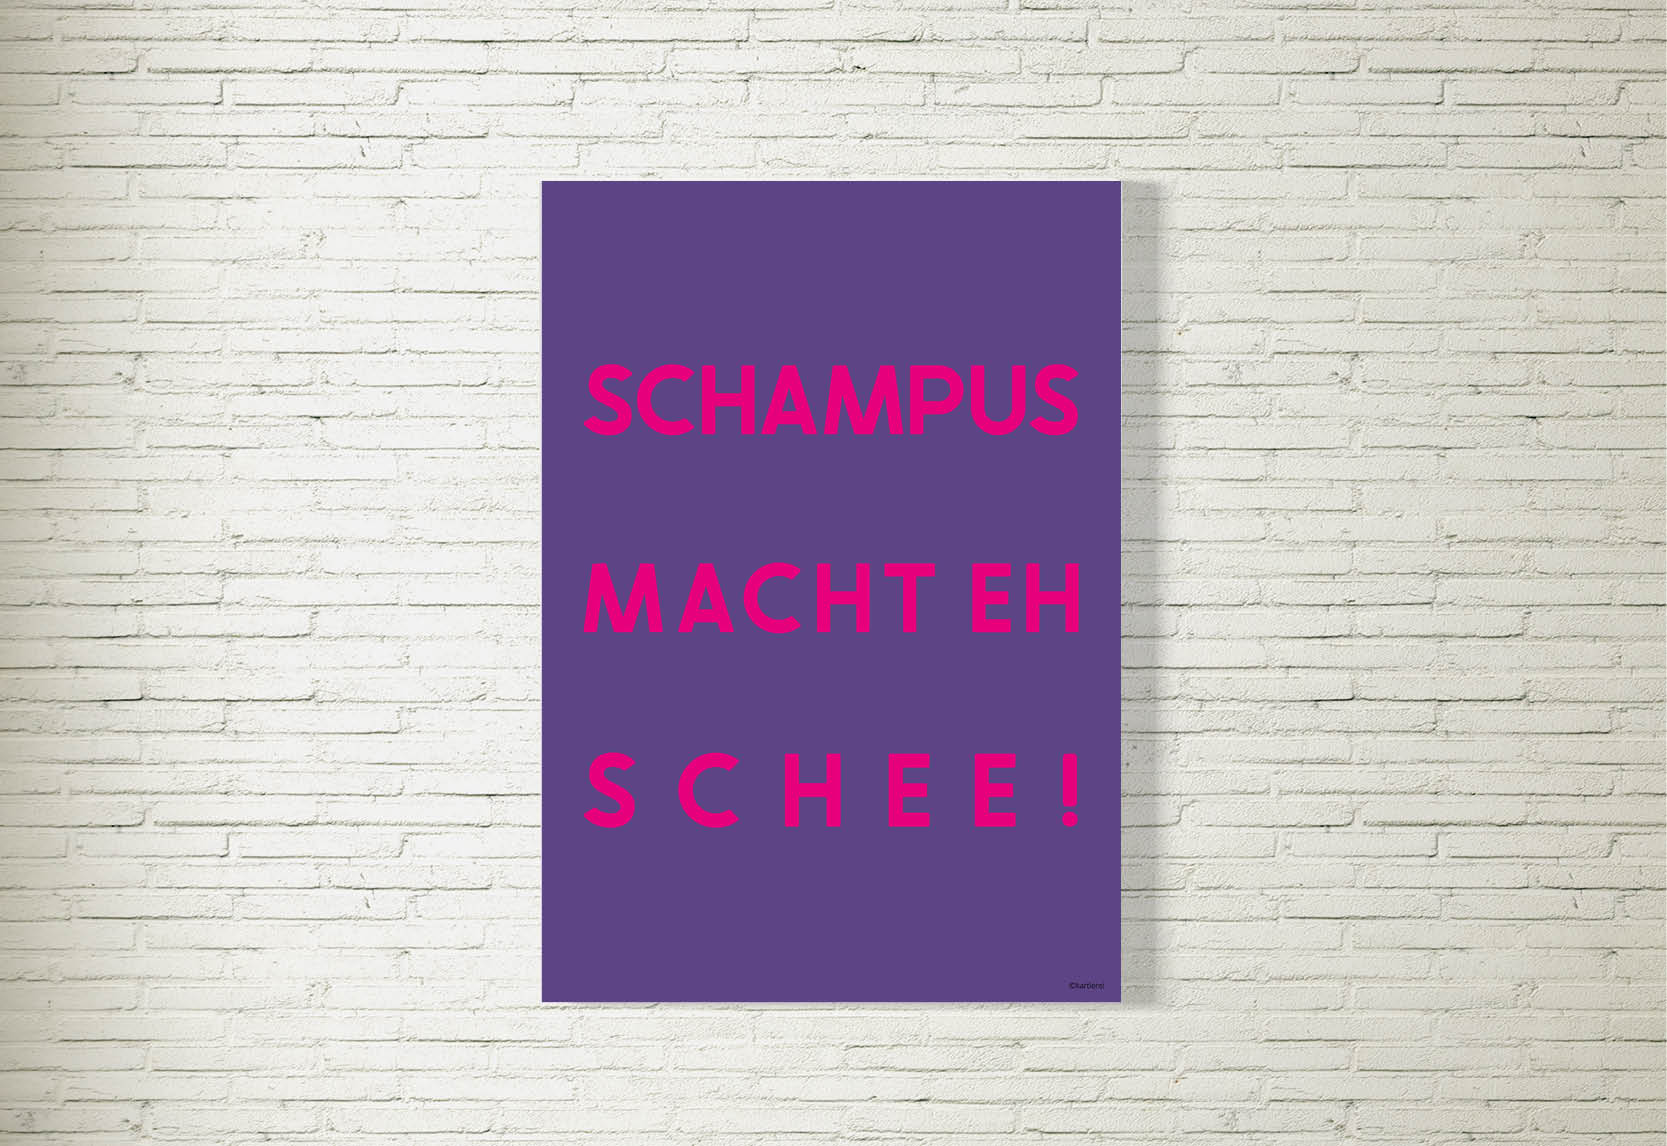 kartlerei poster shop bayrische poster spruch statement typo bilder bayern pop art11 - Poster/Bild Schampus macht eh schee! lila/pink